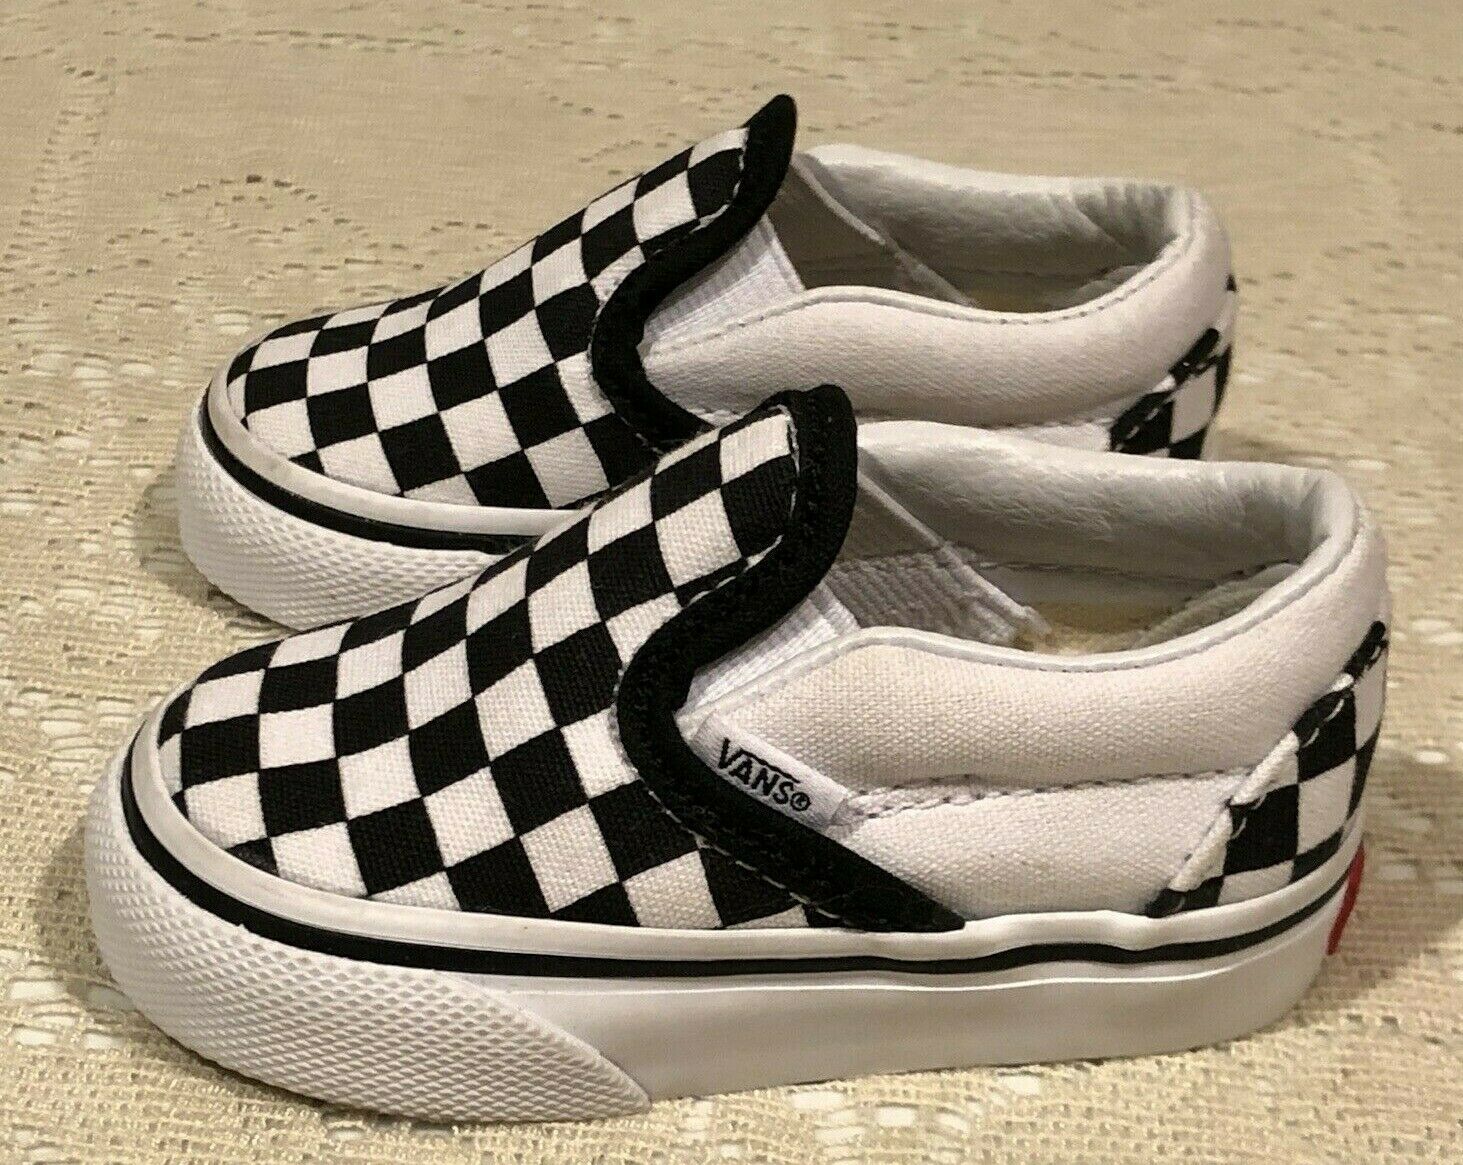 Vans Toddler Boy's Asher V Checkers Black/Natural Skate Shoes Toddler US Size 3